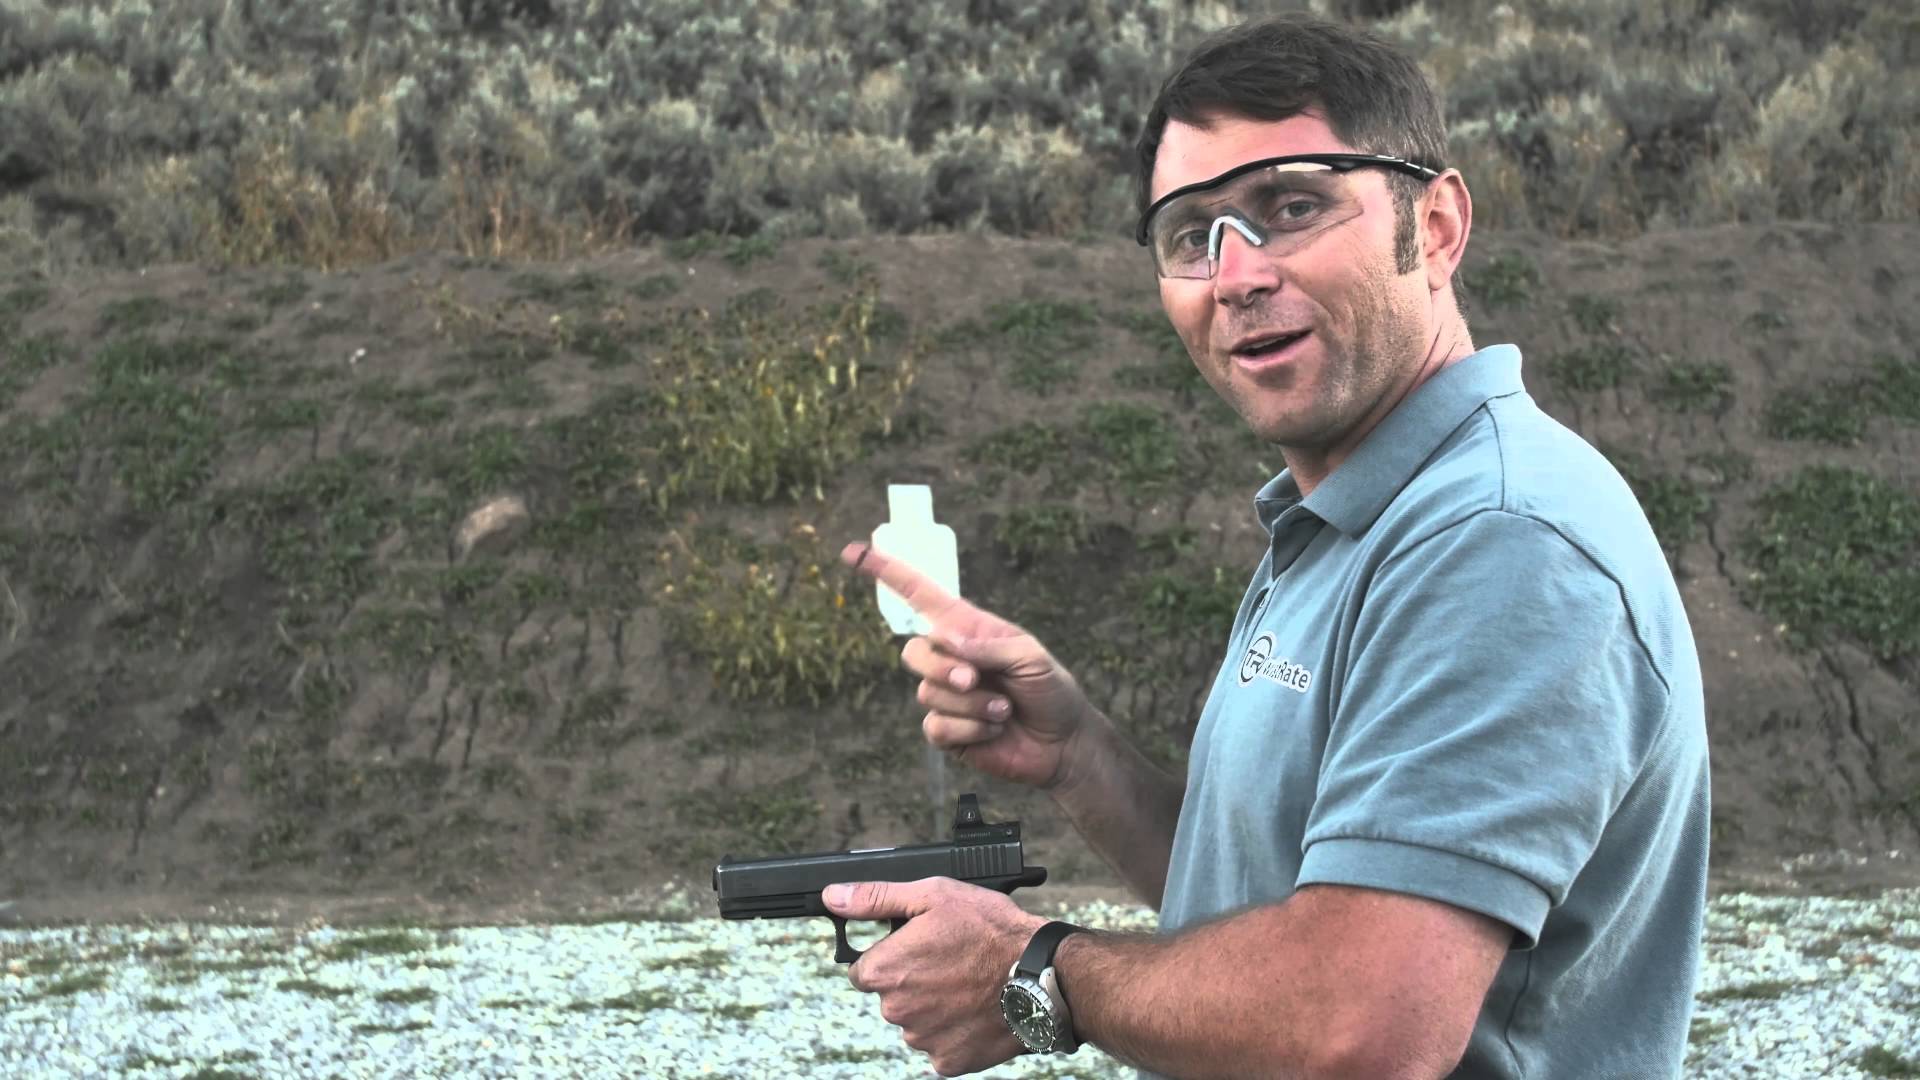 Former CIA contractor teaches handgun basics